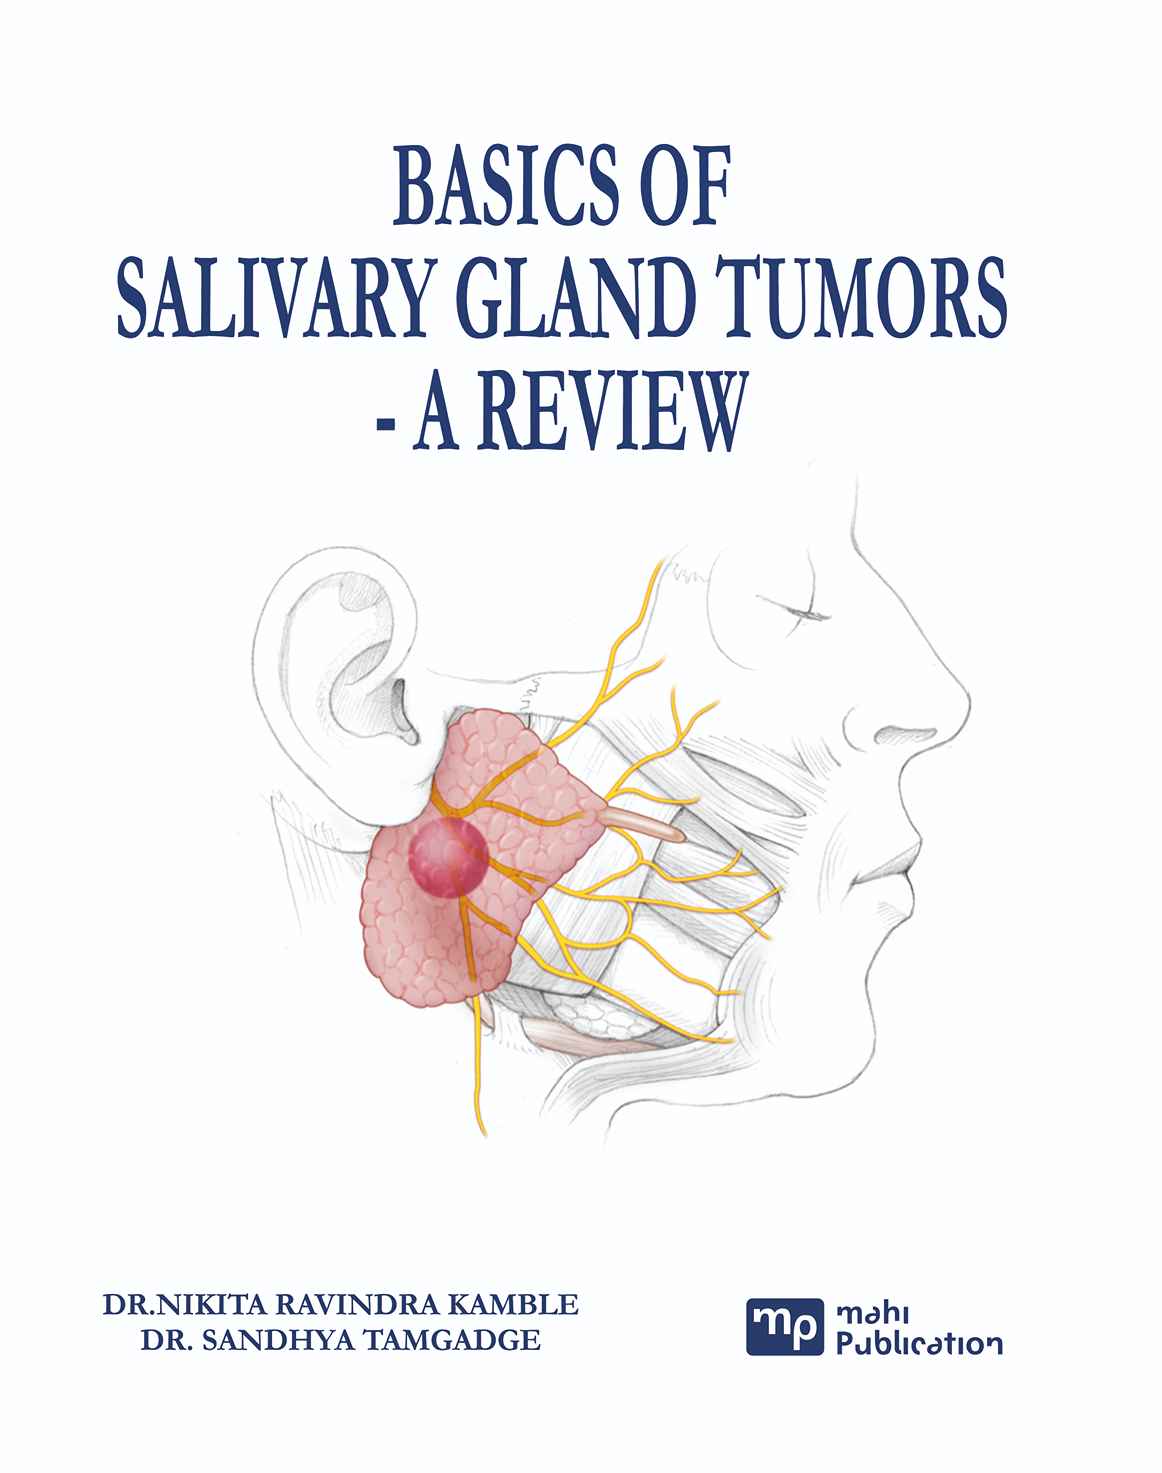 Basics of Salivary Gland Tumors - A Review